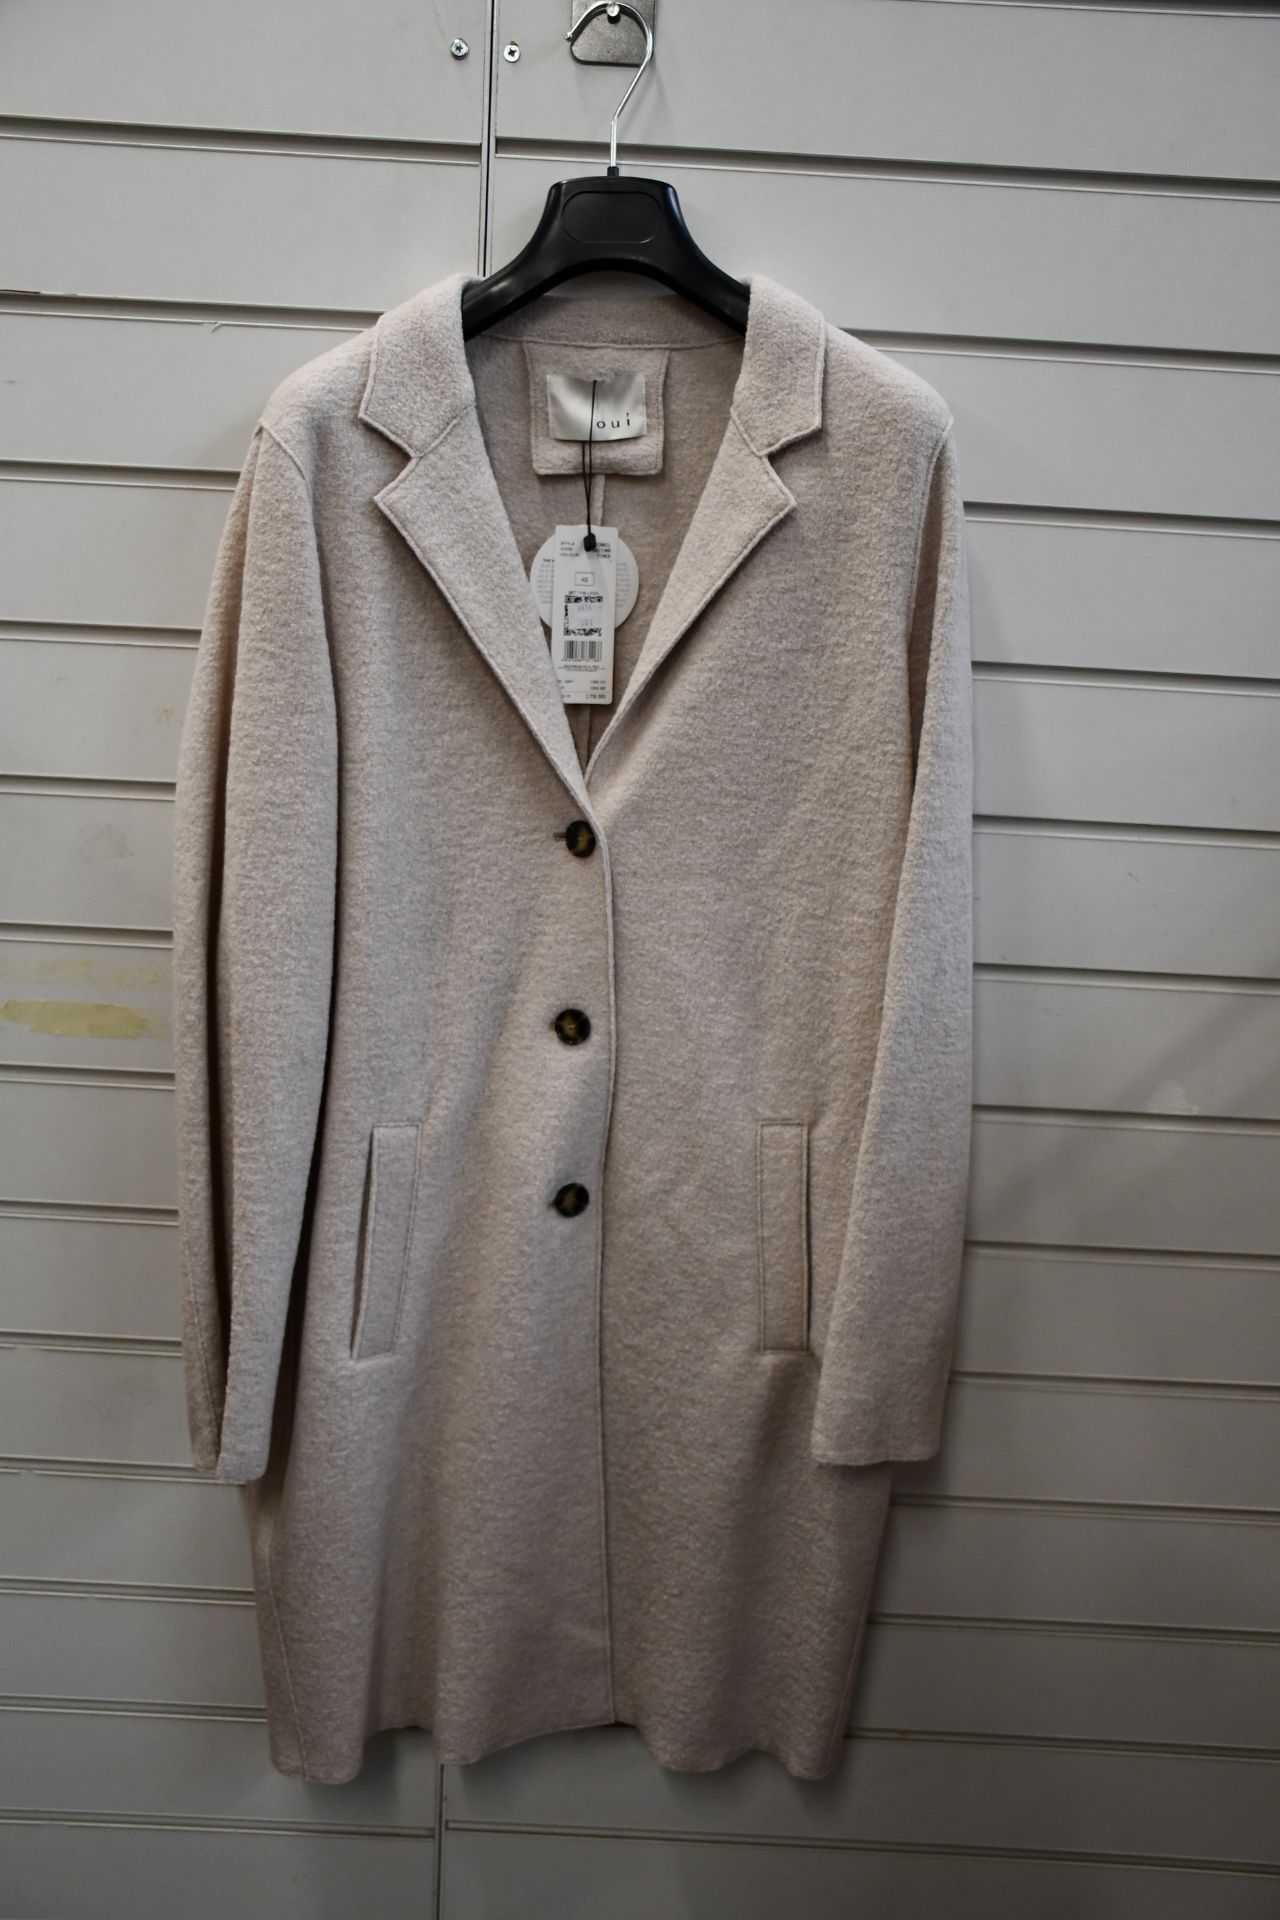 An as new Oui wool coat in oatmeal (UK 12 - RRP £199).